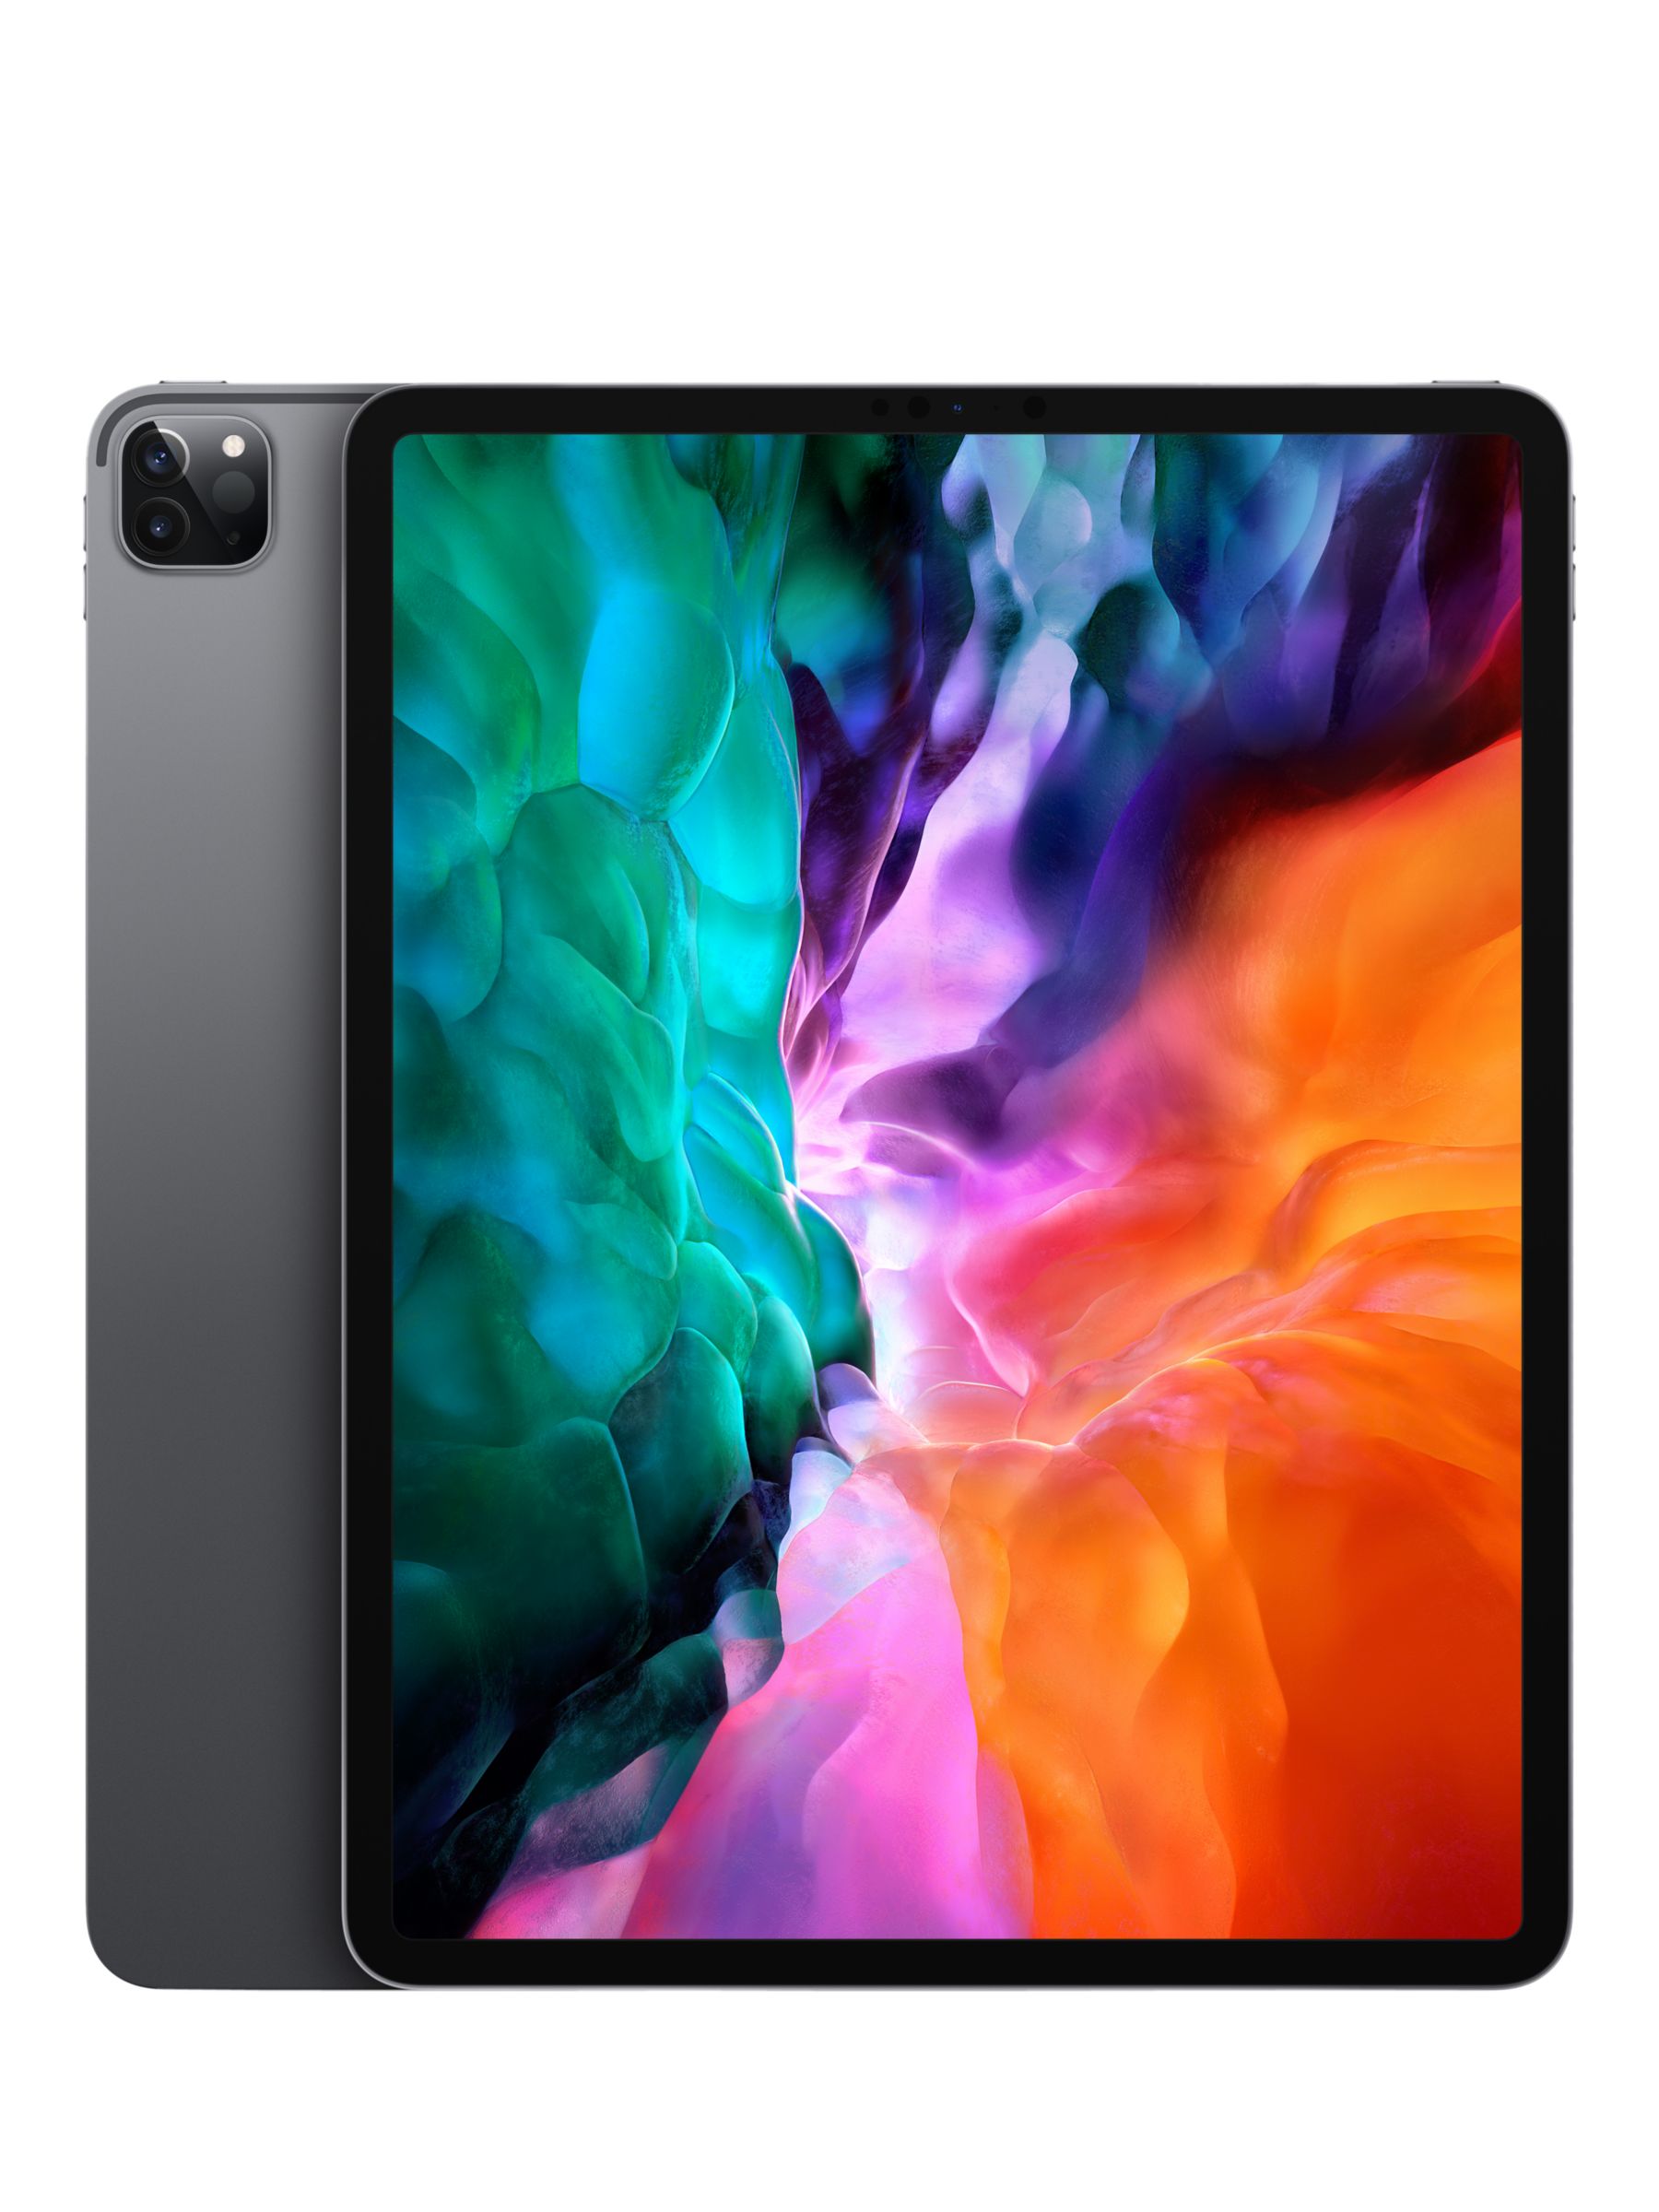 2020 Apple iPad Pro 12.9", A12Z Bionic, iOS, WiFi, 128GB at John Lewis